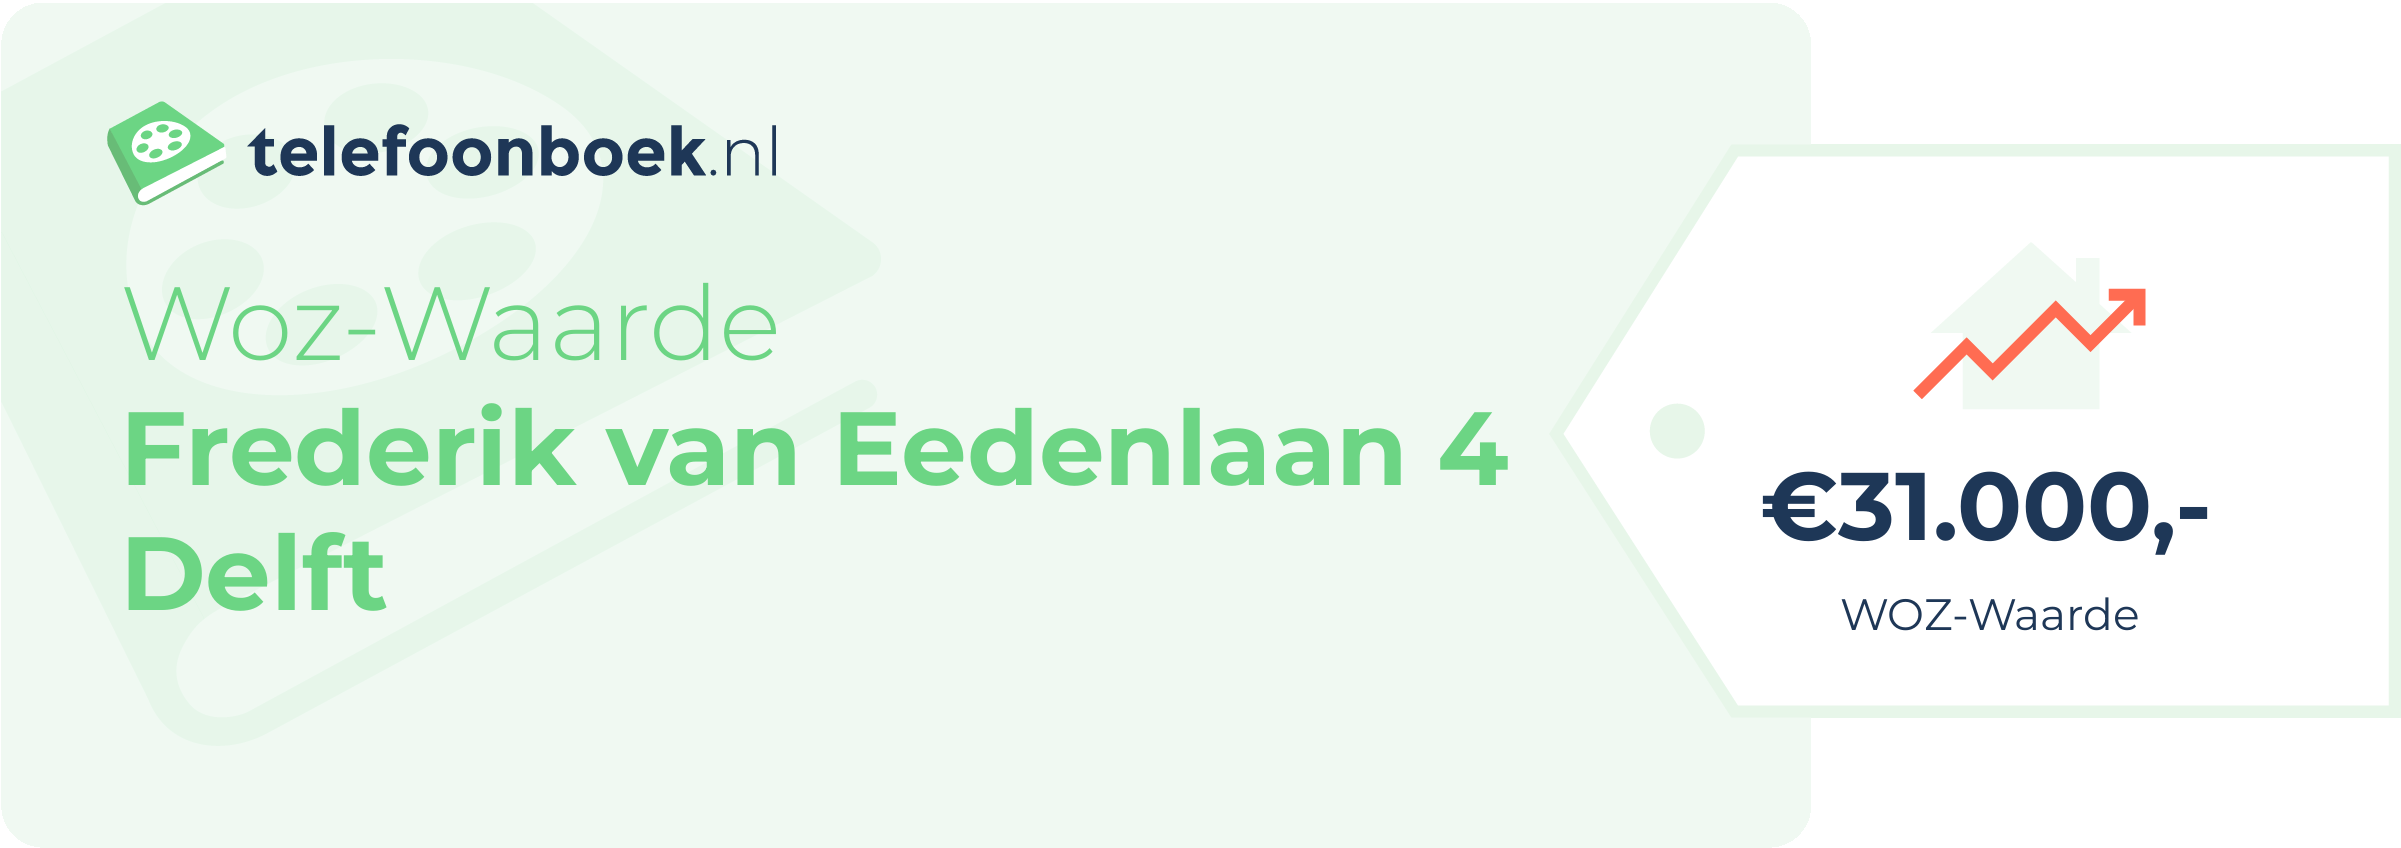 WOZ-waarde Frederik Van Eedenlaan 4 Delft